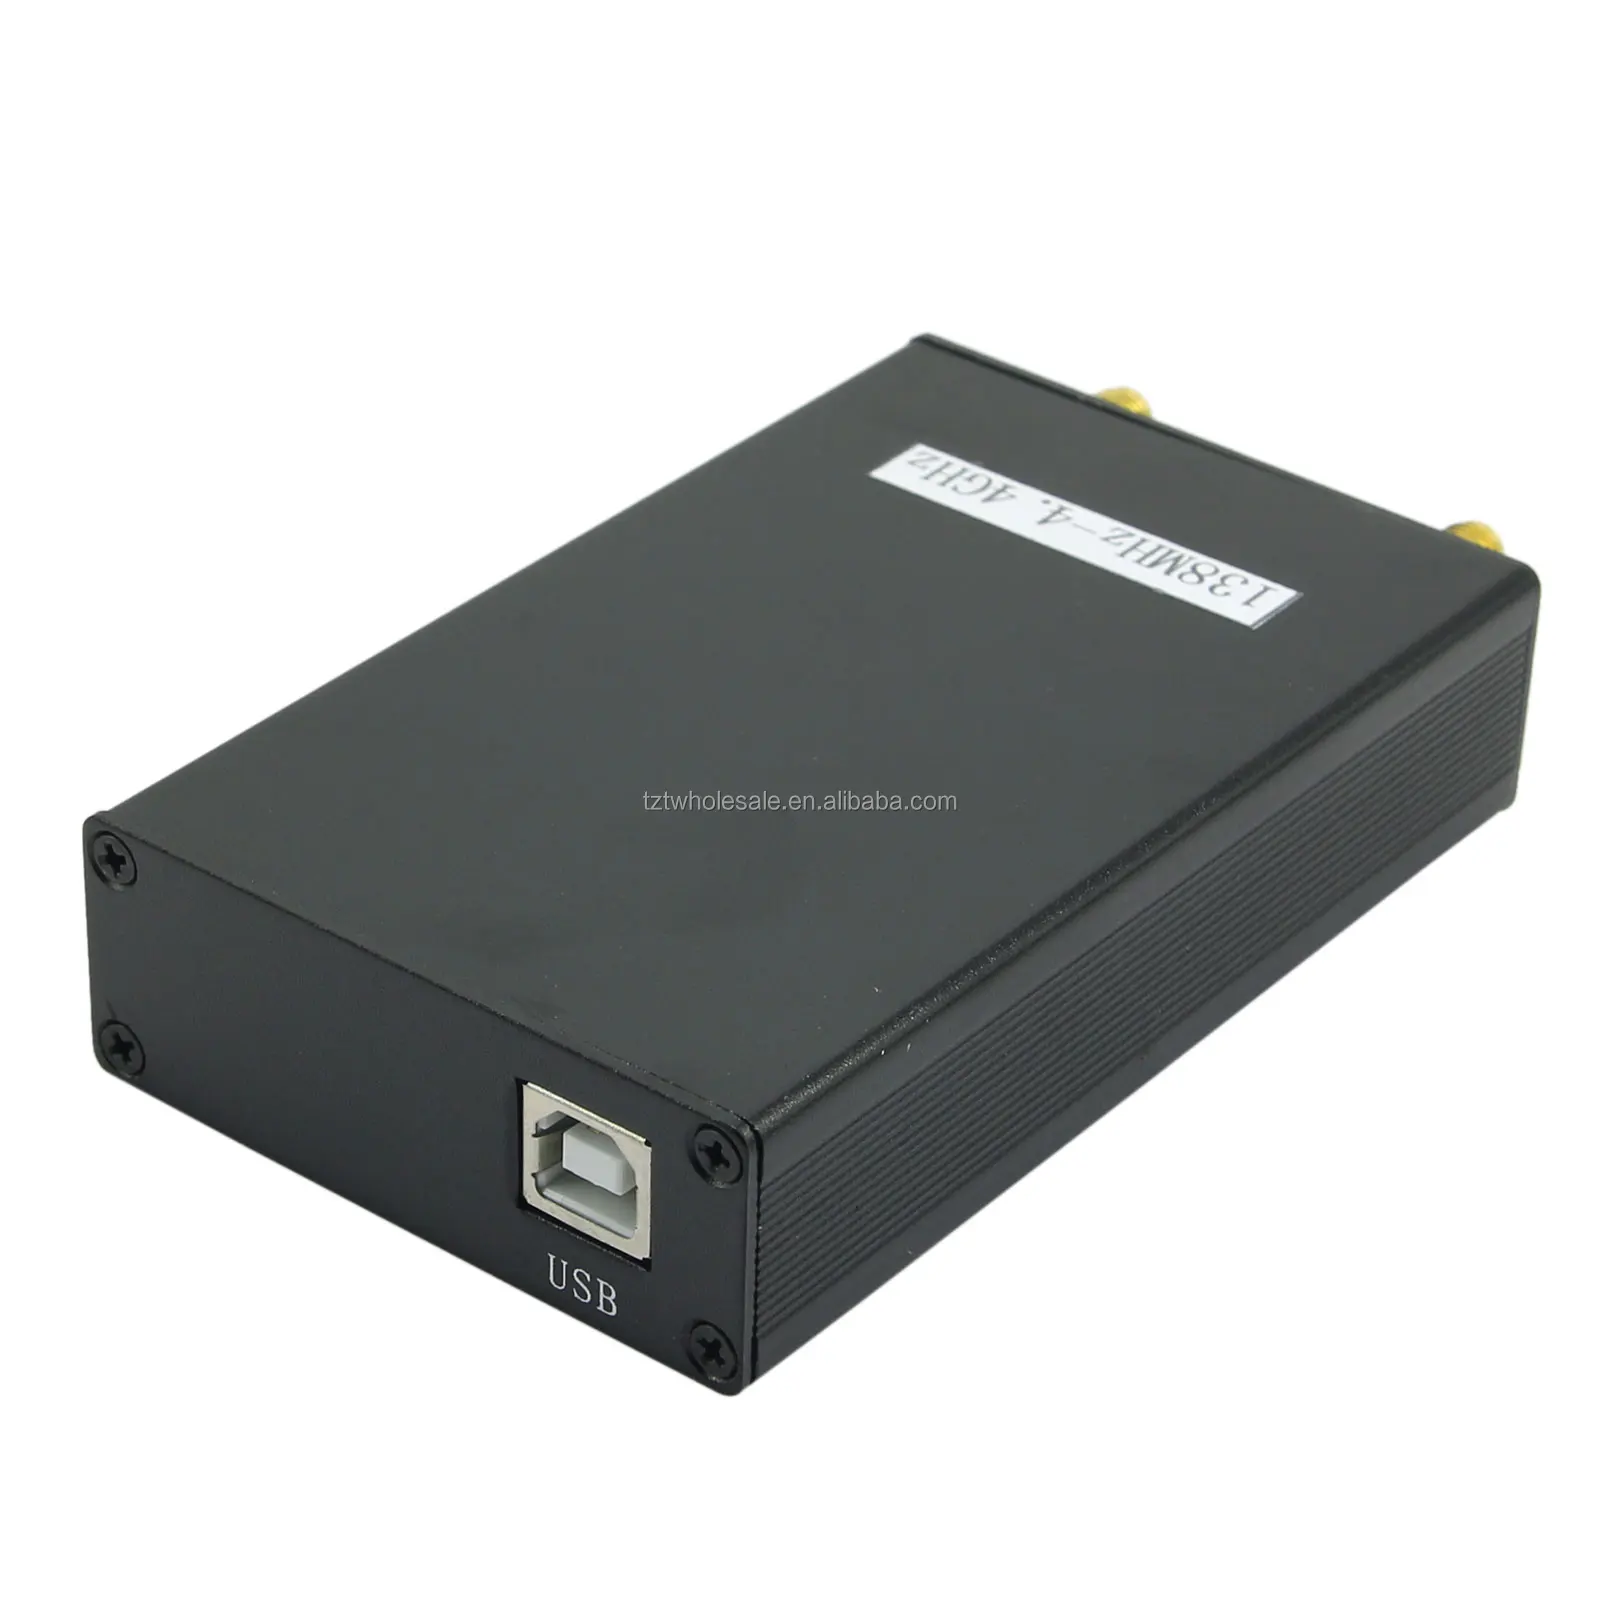 New 138MHz-4.4GHz 4.4G USB SMA Source/Signal Generator/Simple Spectrum Analyzer 